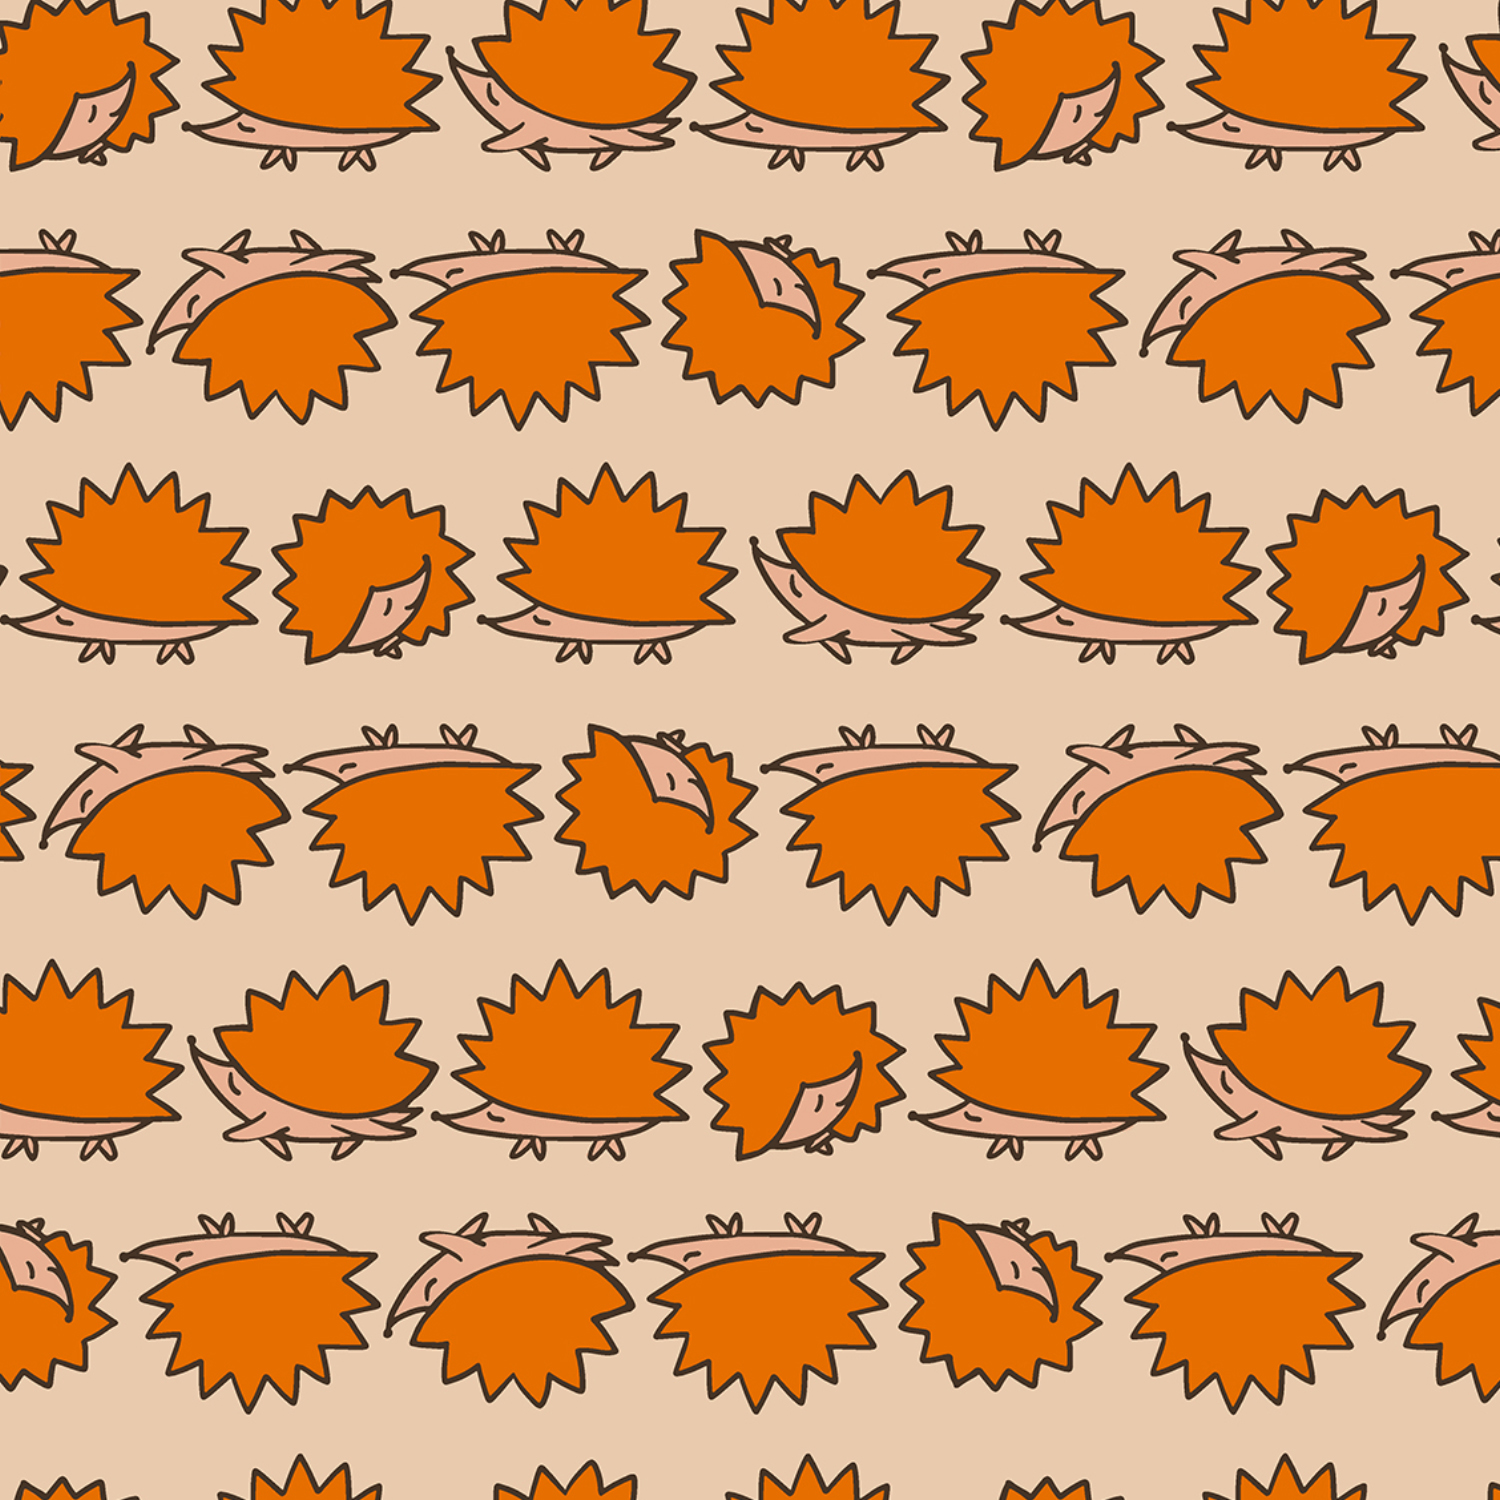 Print met egeltjes oranje